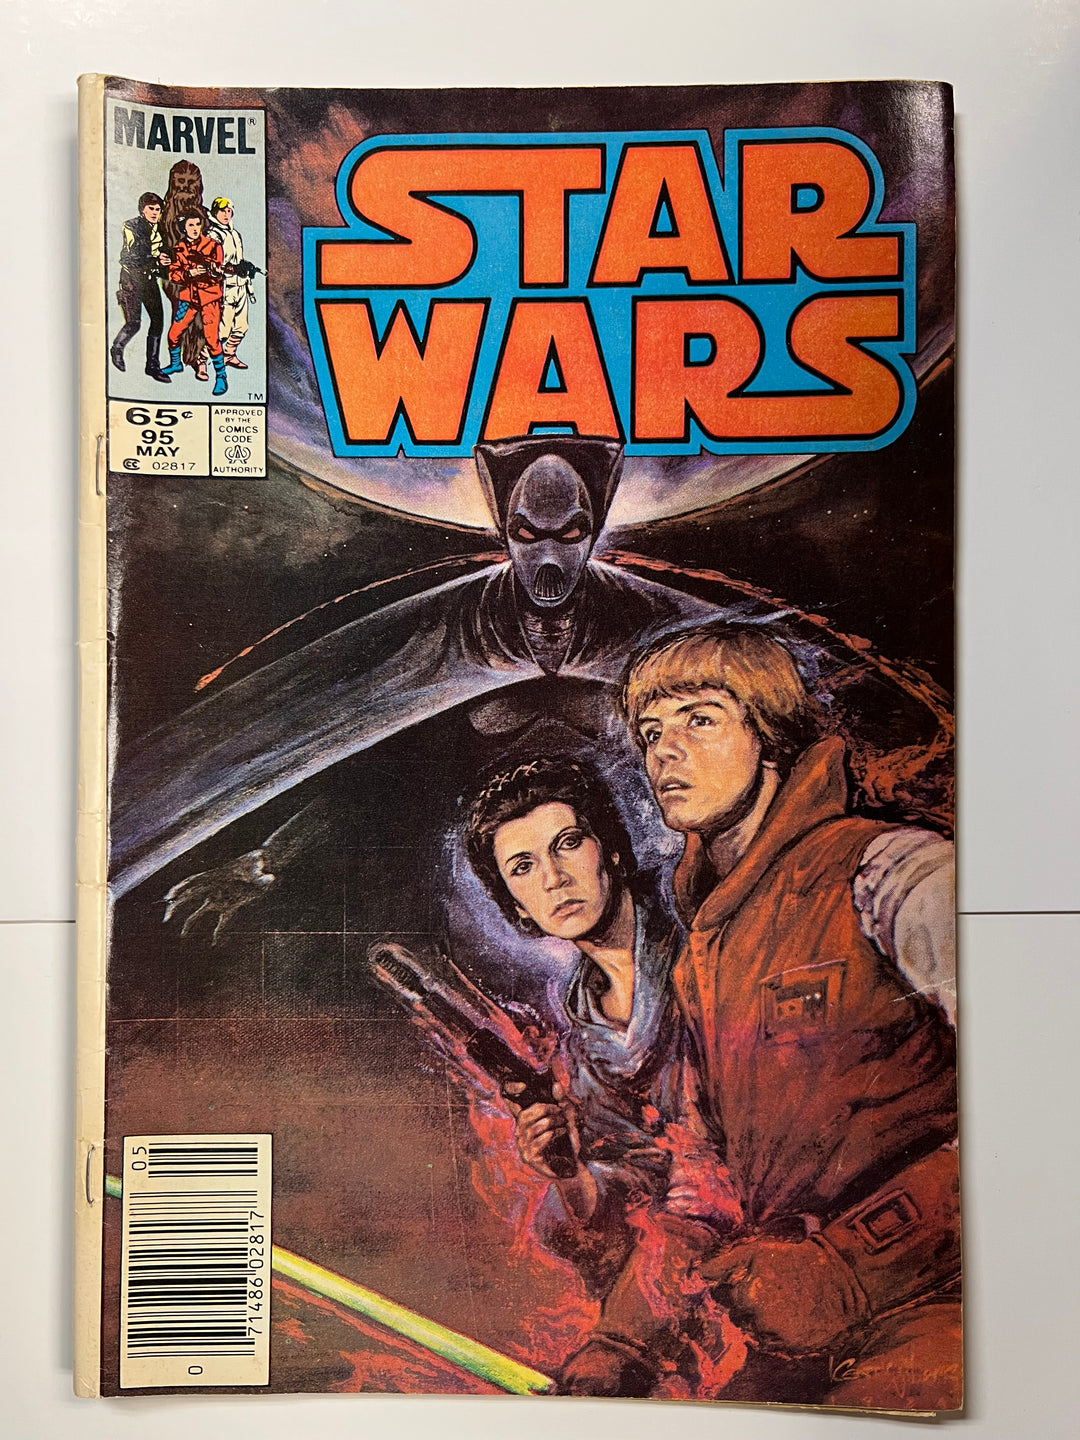 Star Wars #95 Marvel 1985 VG